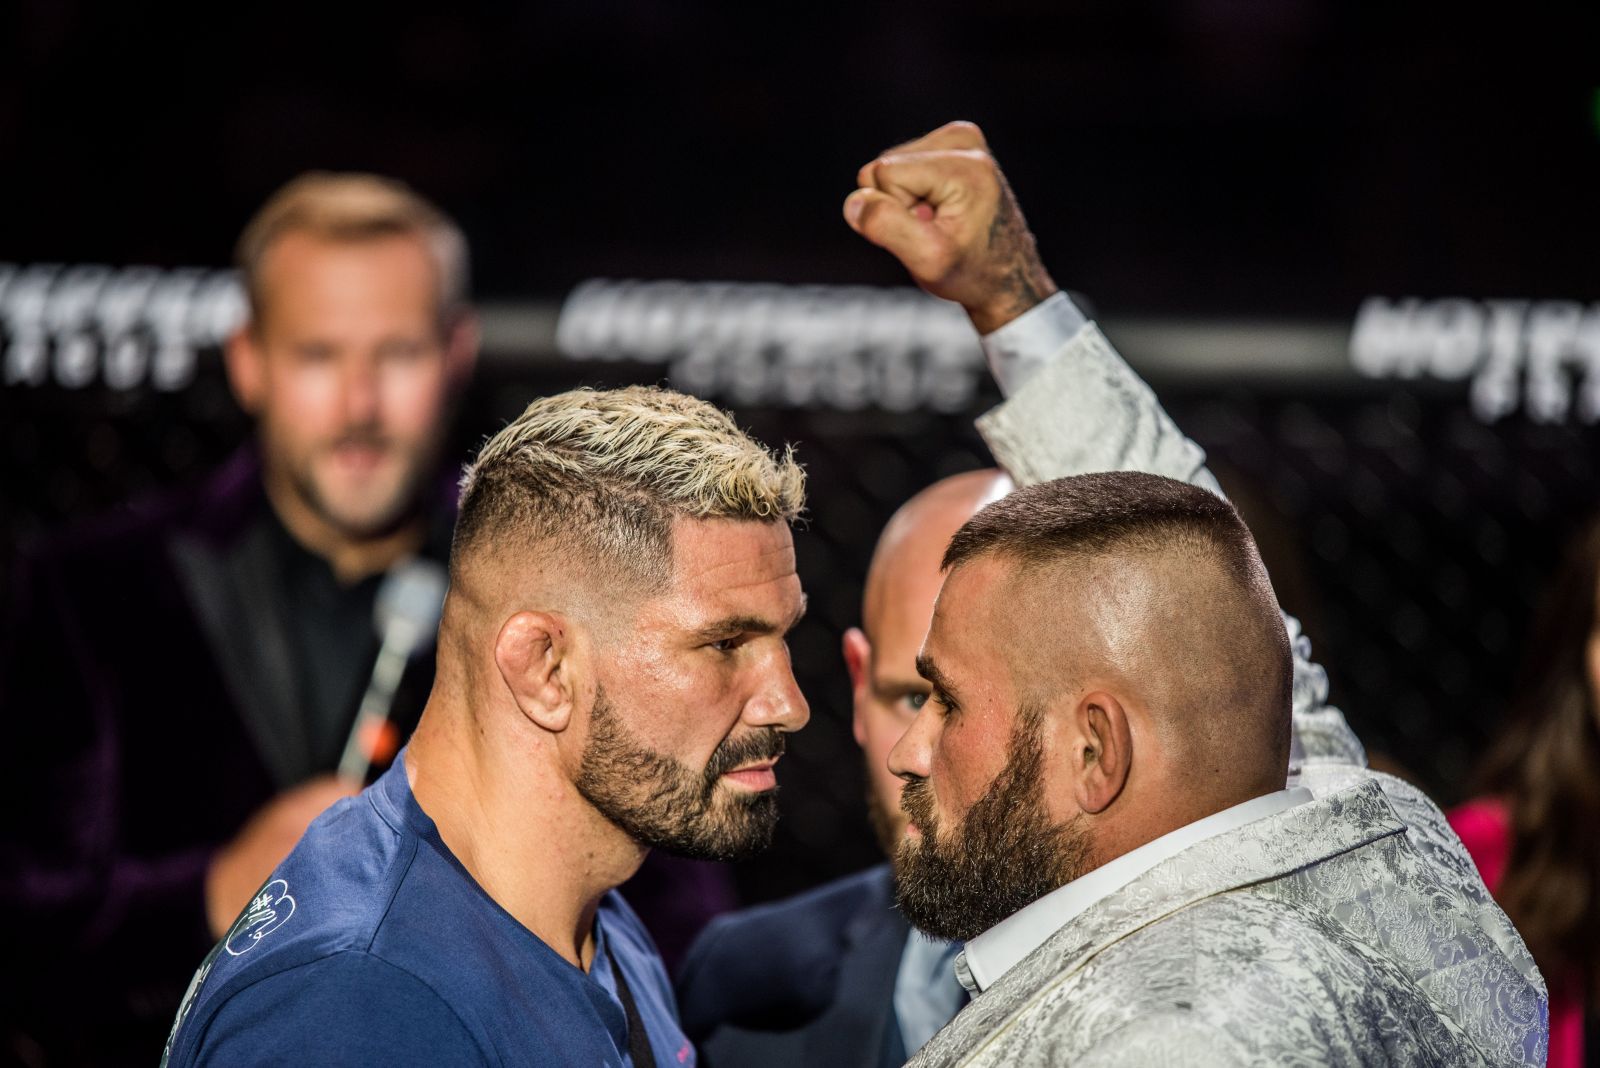 Nový šampion a bitva o krále Bratislavy. Oktagon fanouškům MMA přinesl další nezapomenutelný zážitek